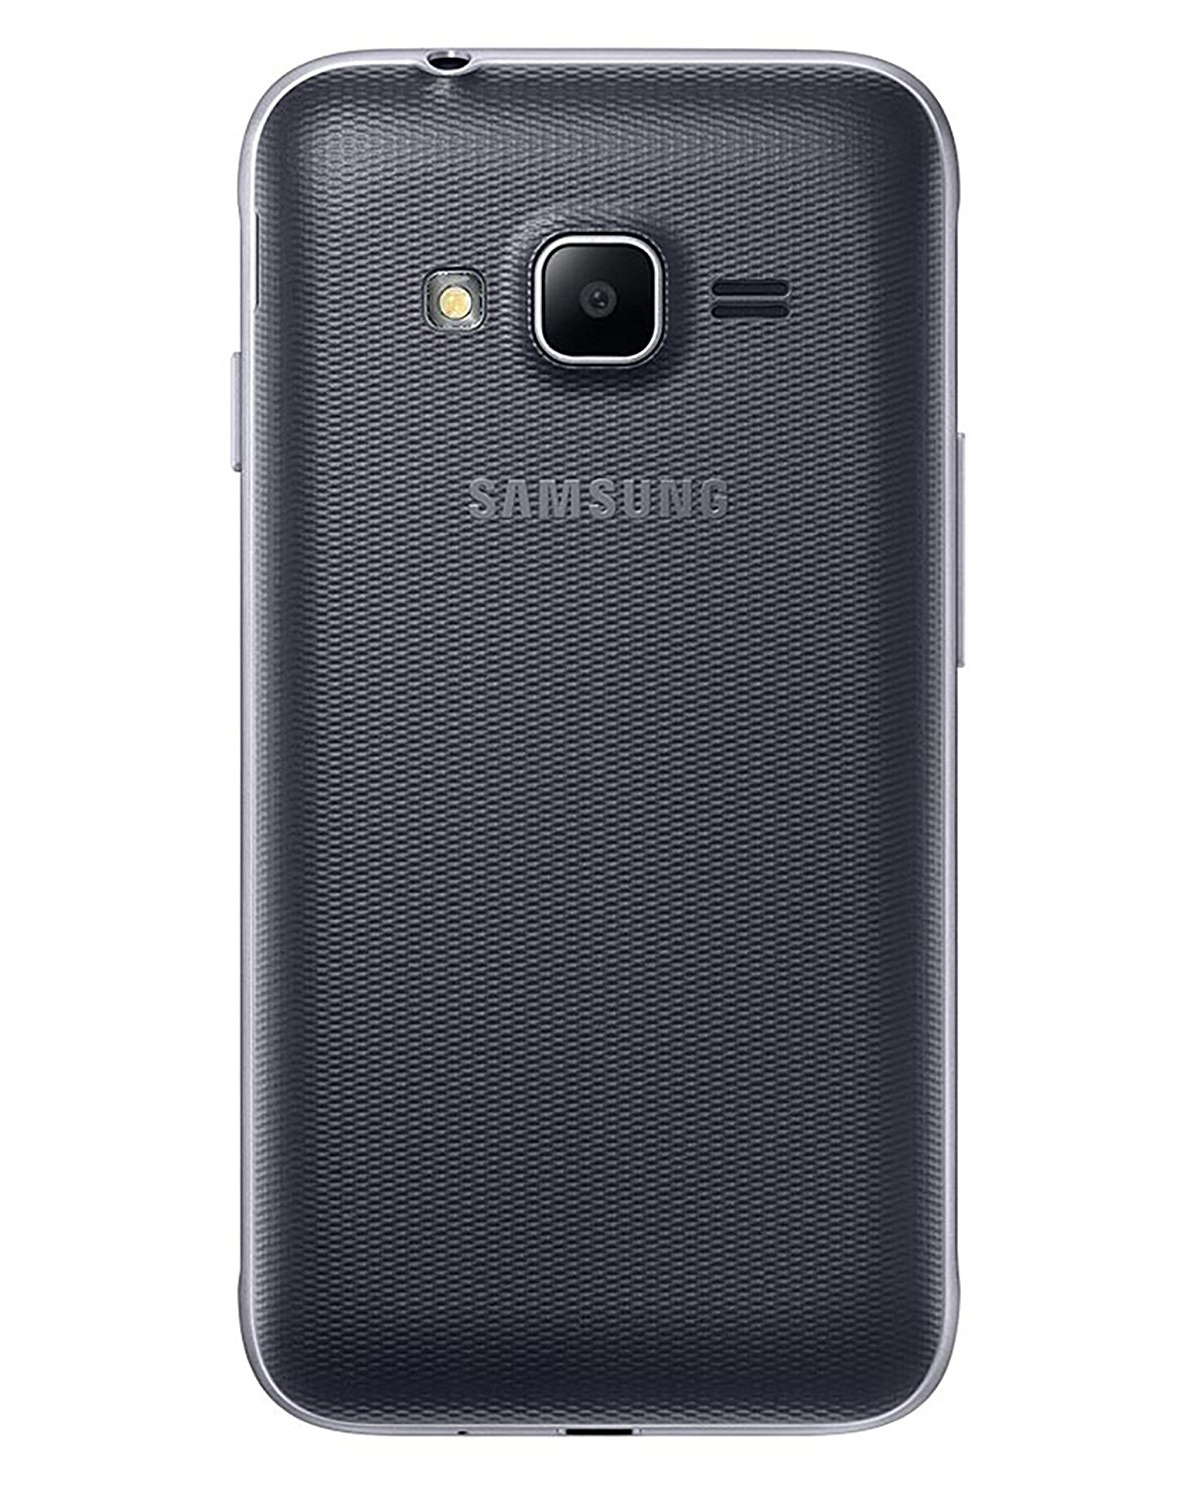 Samsung galaxy mini prime. Samsung Galaxy j1 Mini. Samsung Galaxy j1 Mini Prime (2016) SM-j106f/DS. Samsung j1 Mini Prime. Samsung Galaxy j1 Mini SM-j105h.